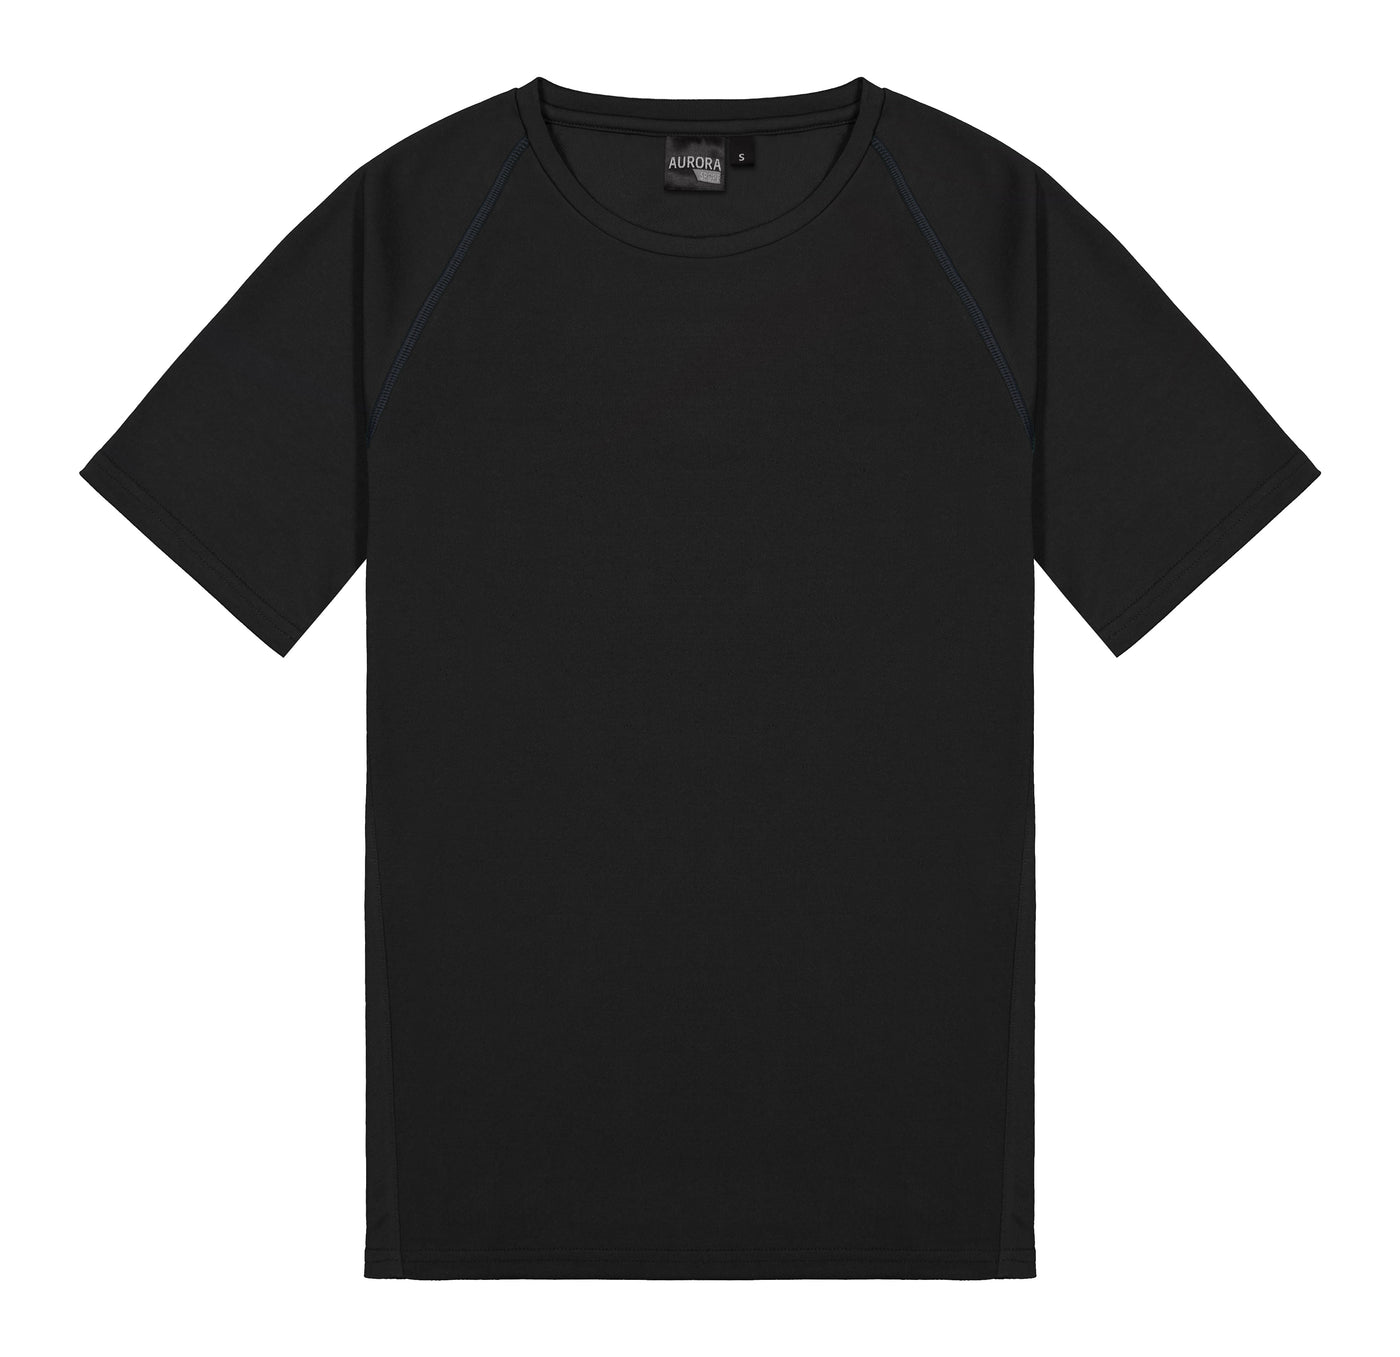 XTT Performance T-shirt – Mens